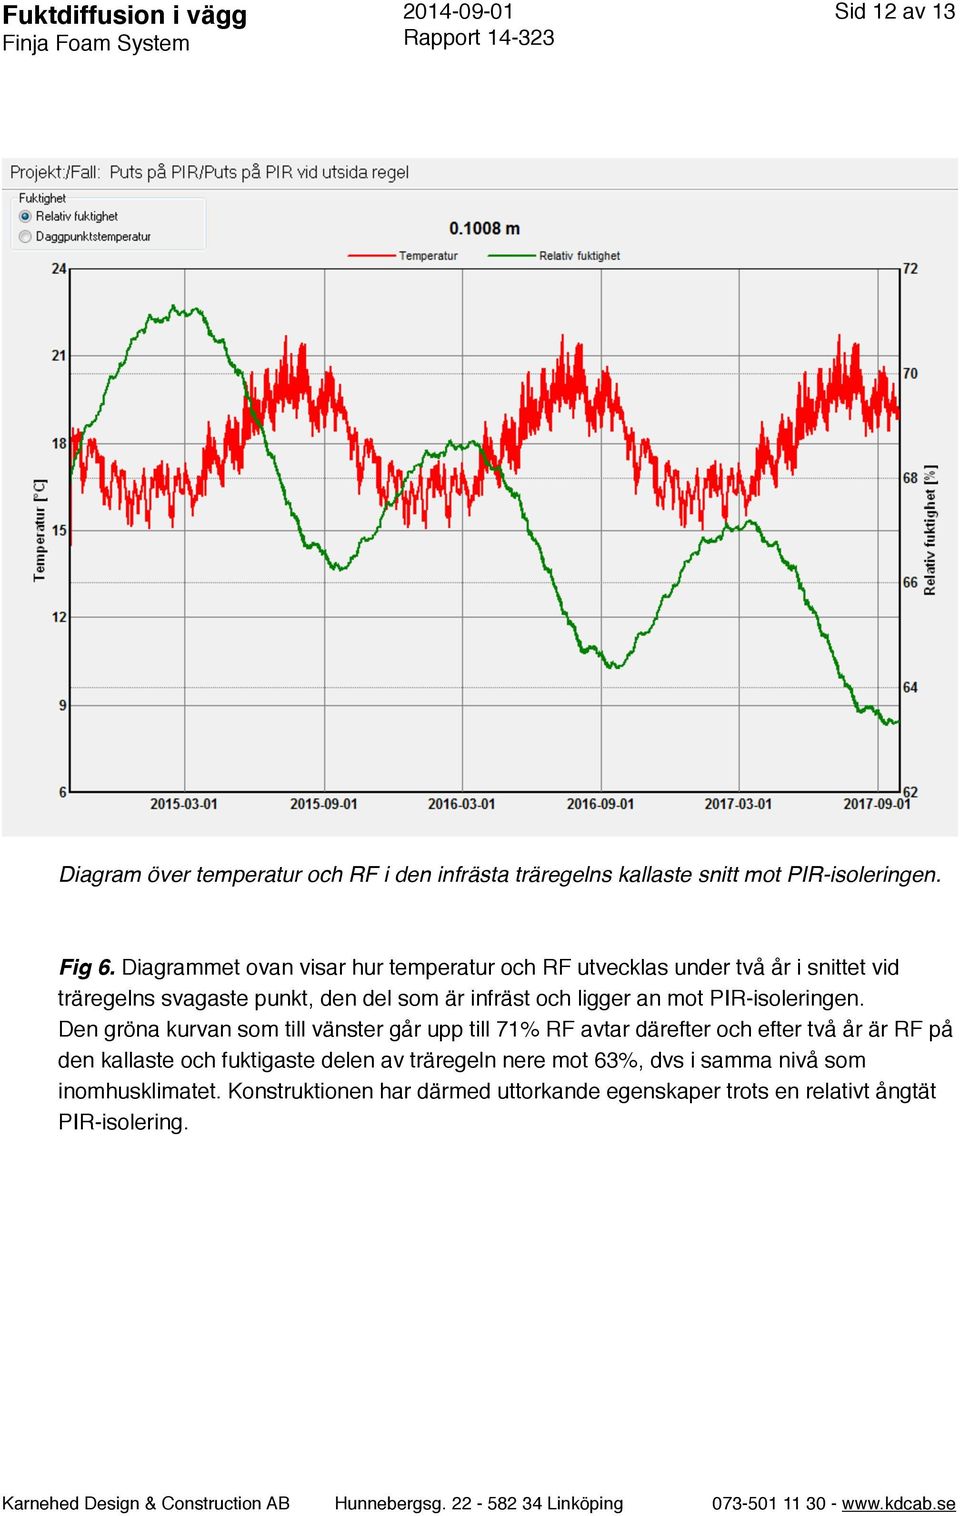 Diagrammet ovan visar hur temperatur och RF utvecklas under två år i snittet vid träregelns svagaste punkt, den del som är infräst och ligger an mot